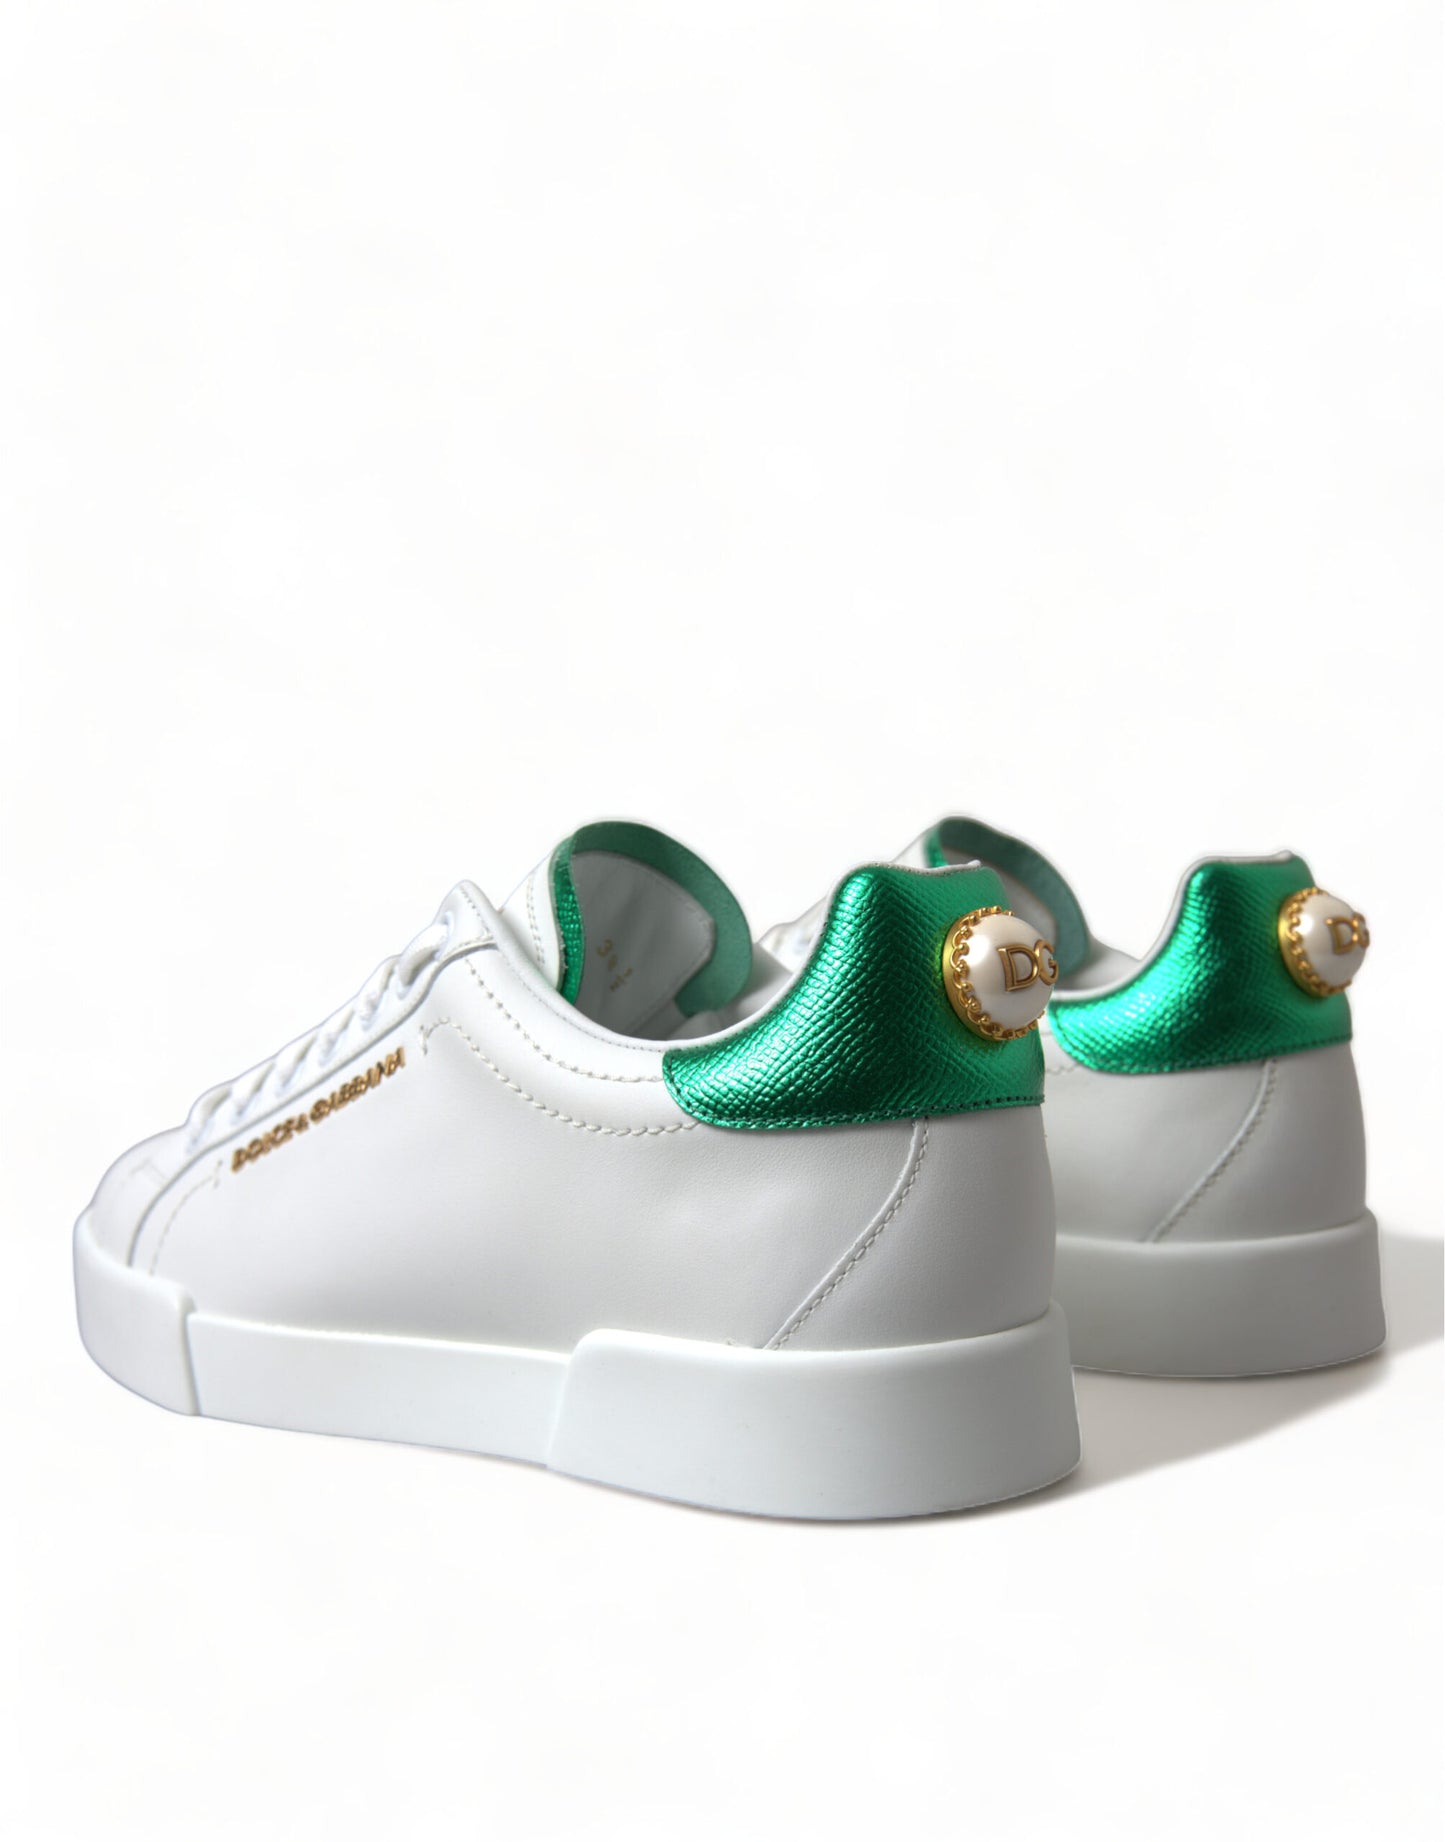 Dolce & Gabbana White Green Leather Portofino Classic Sneaker Shoes